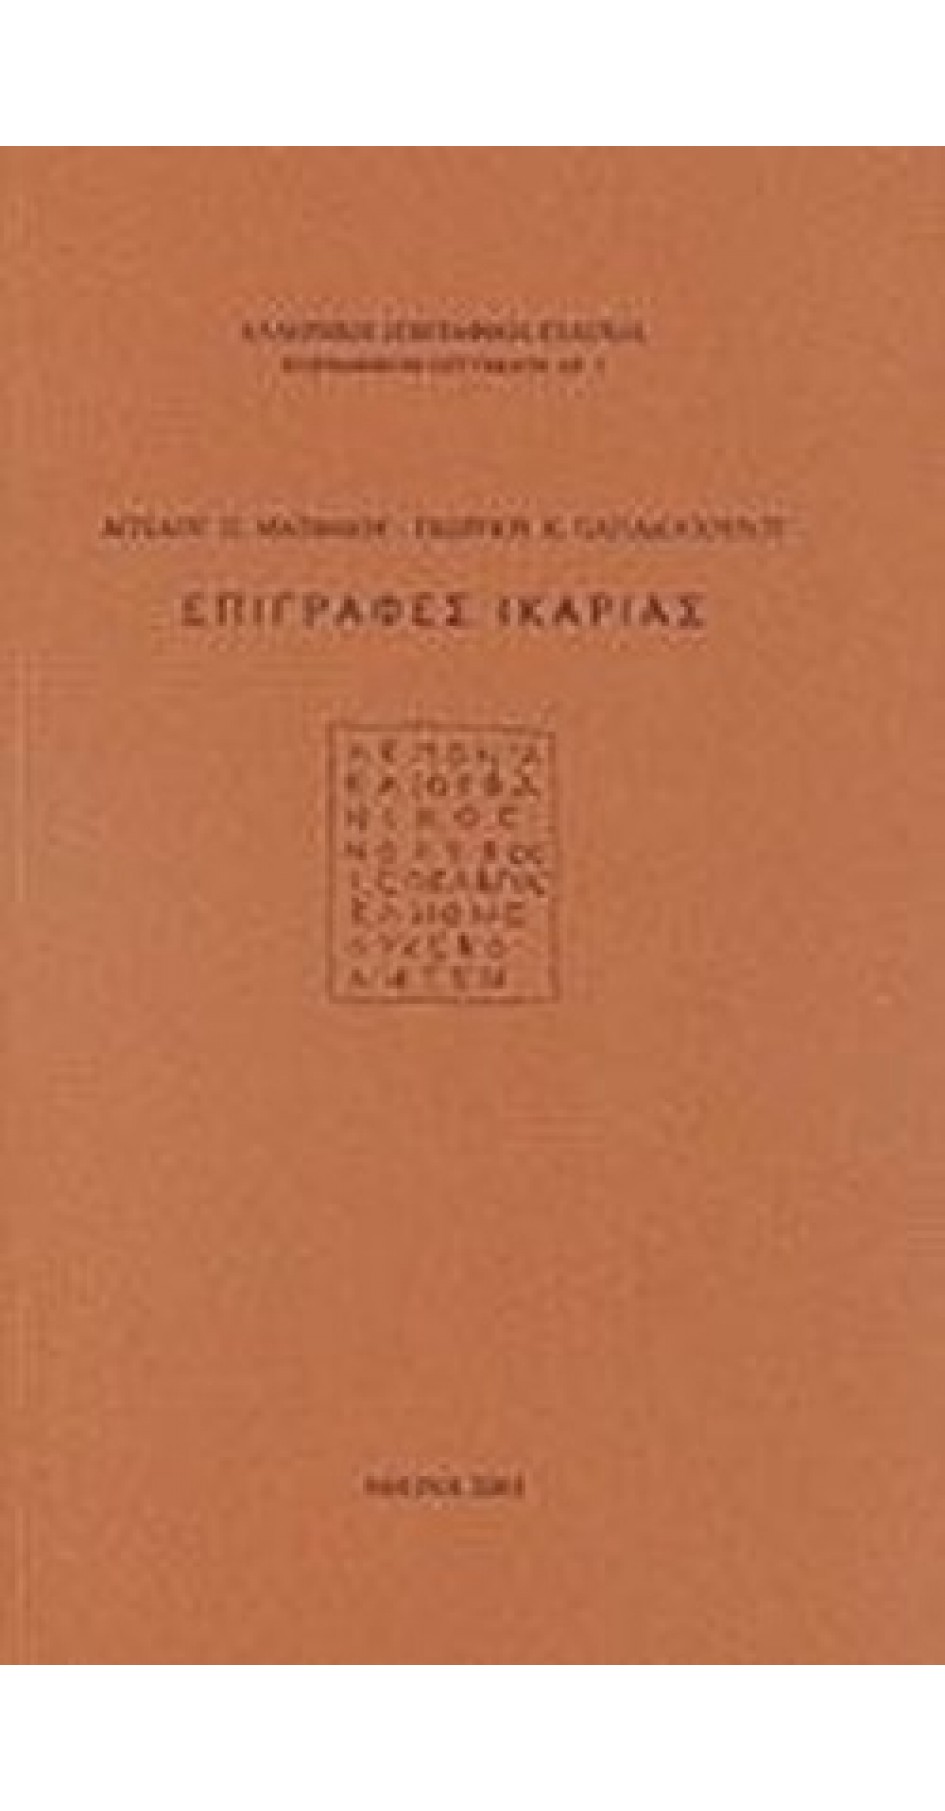 Επιγραφές Ικαρίας (book in Greek)